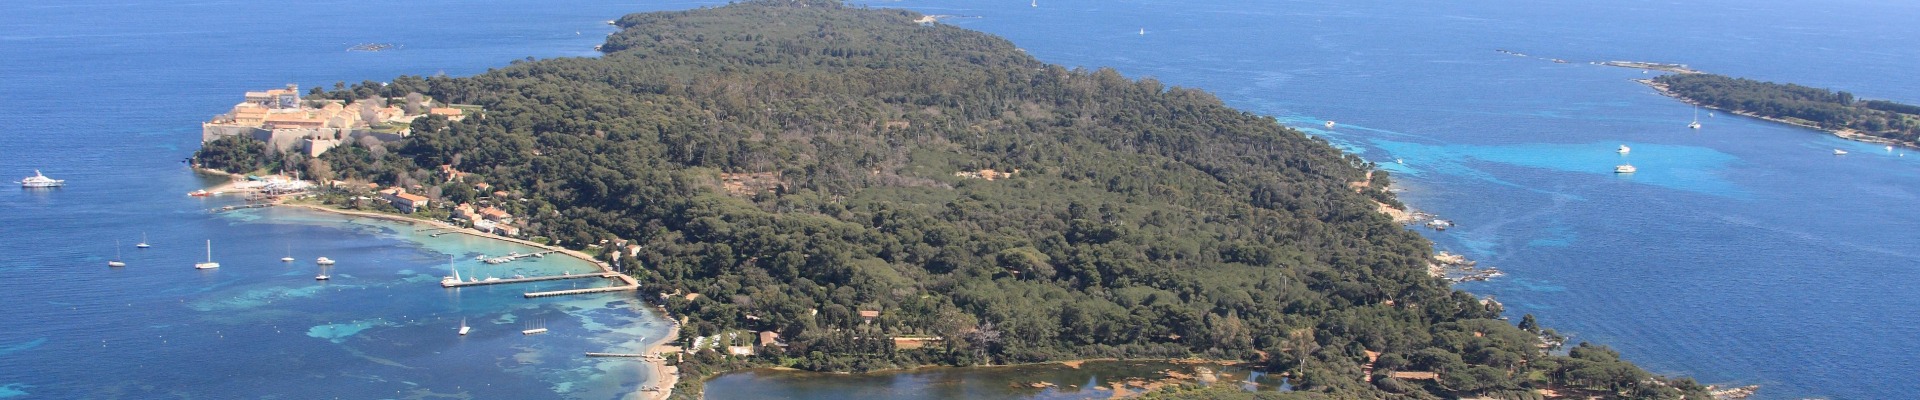 Vue aérienne de l'île Sainte Marguerite